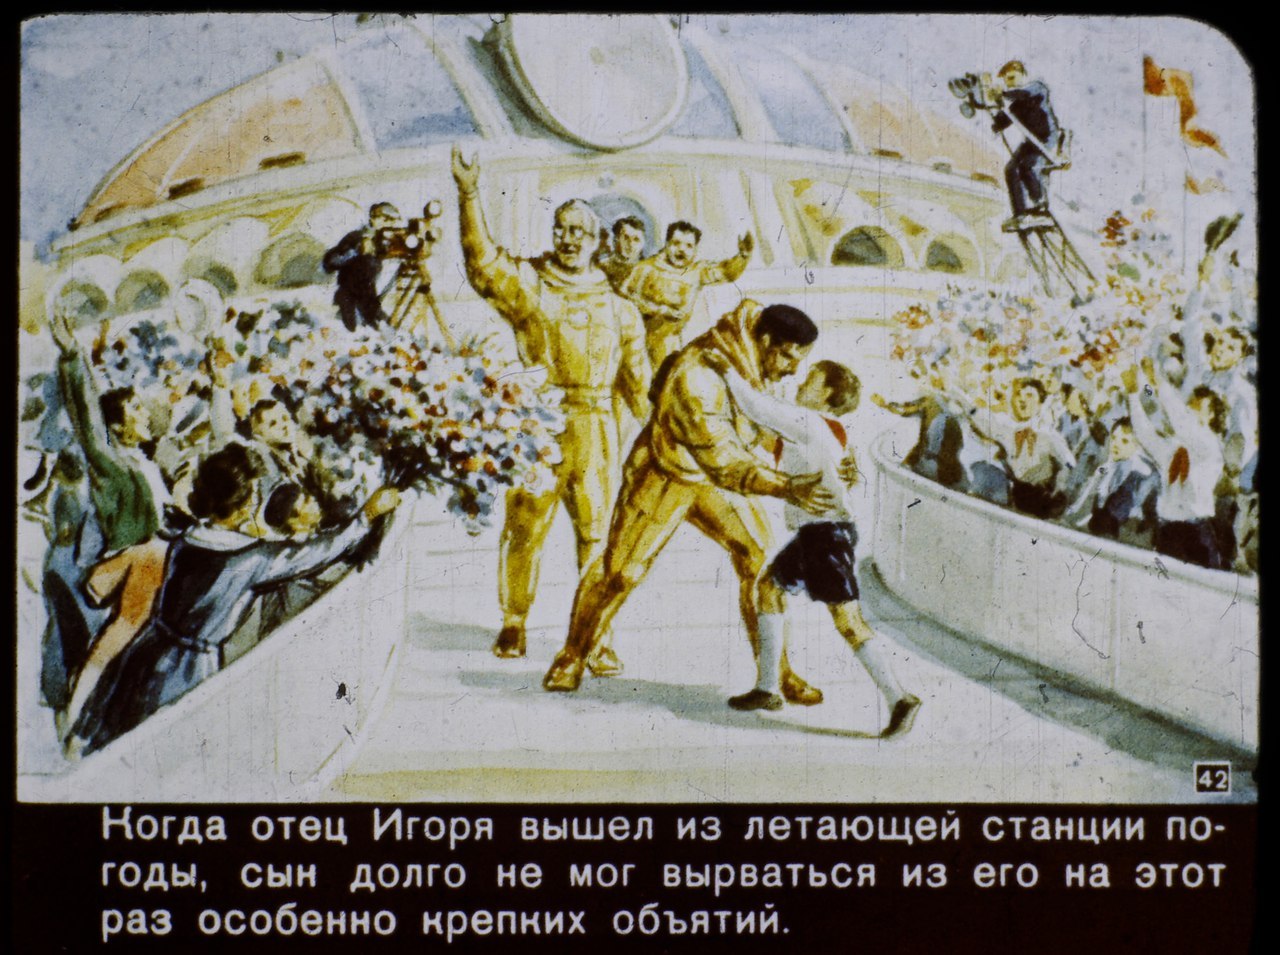 2017 год в советском диафильме 1960 года